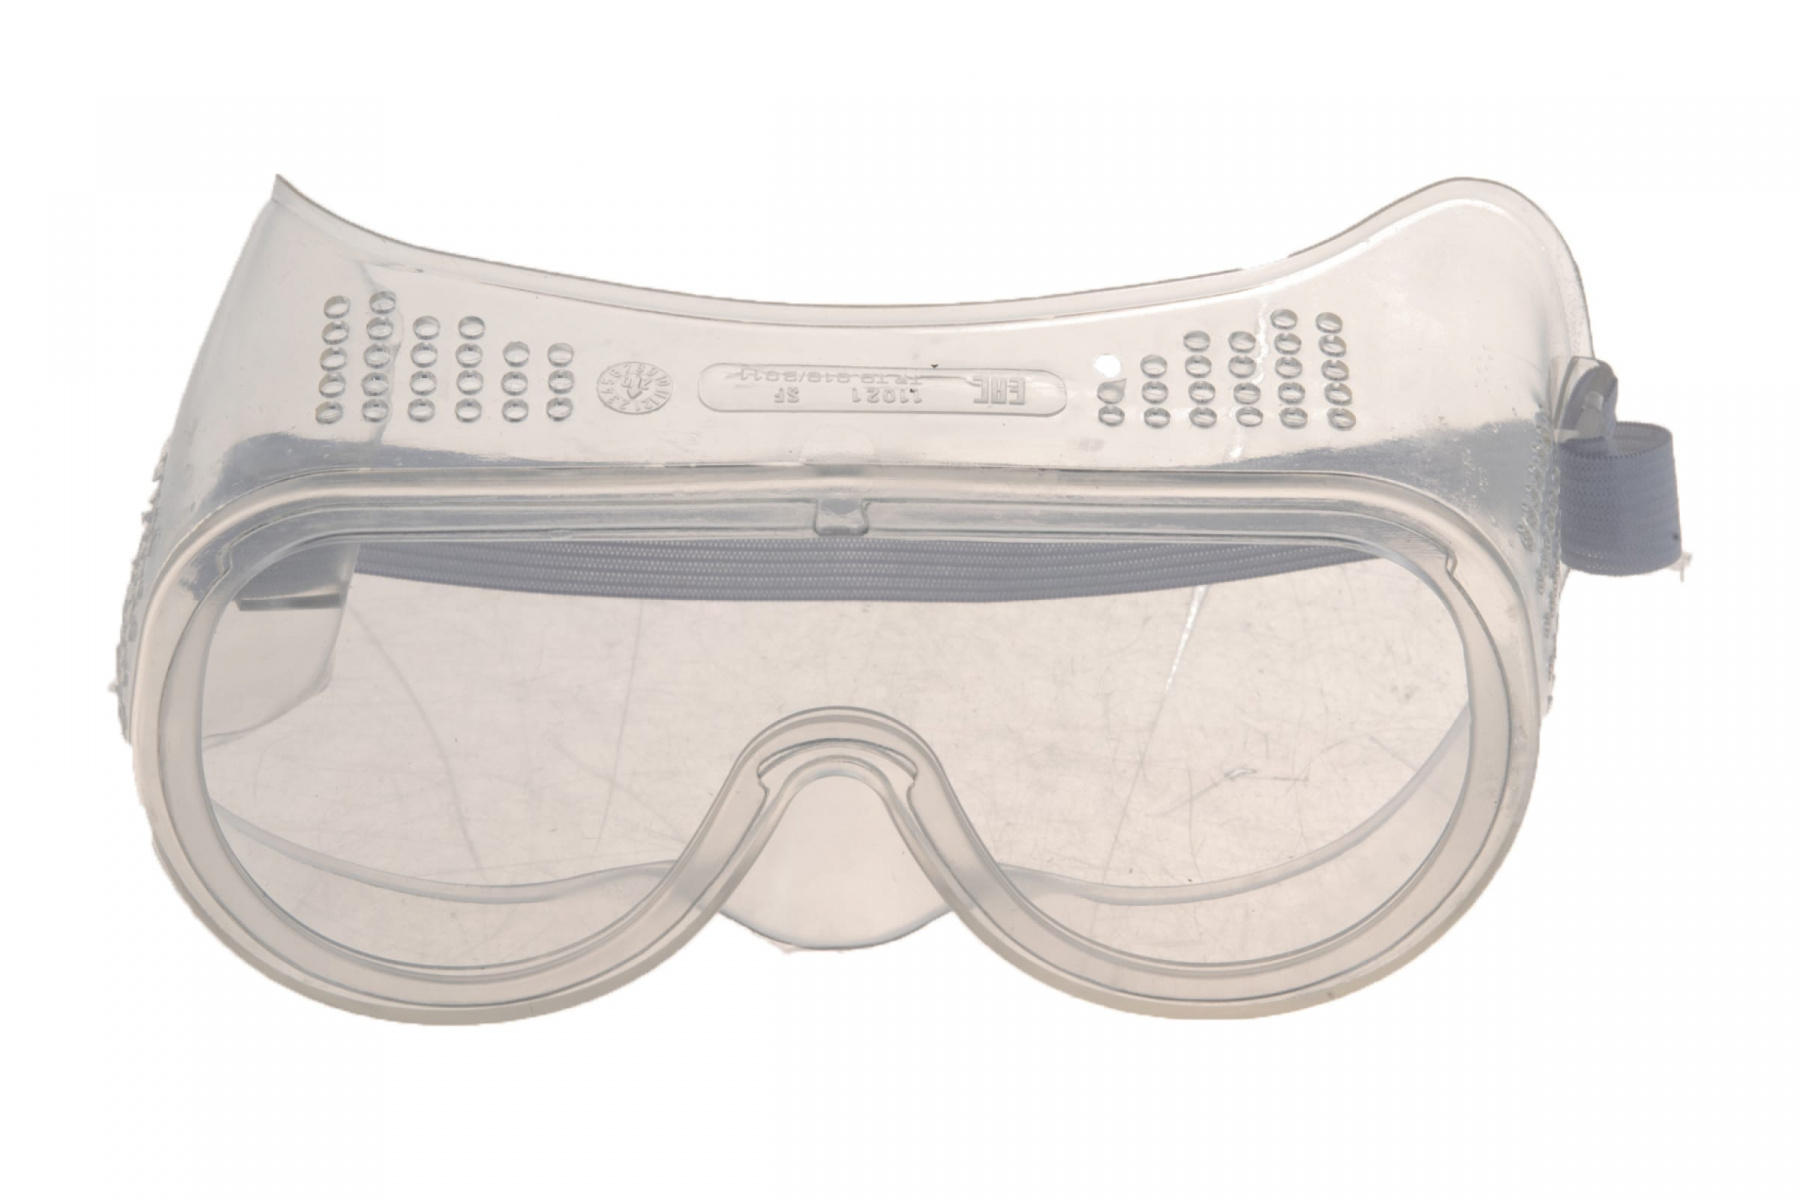 Очки защитные закрытые с прямой вентиляцией. Stayer очки защитные с прямой вентиляцией 1102. Очки Stayer Profi защитные. Очки защитные Stayer Standard (1101).